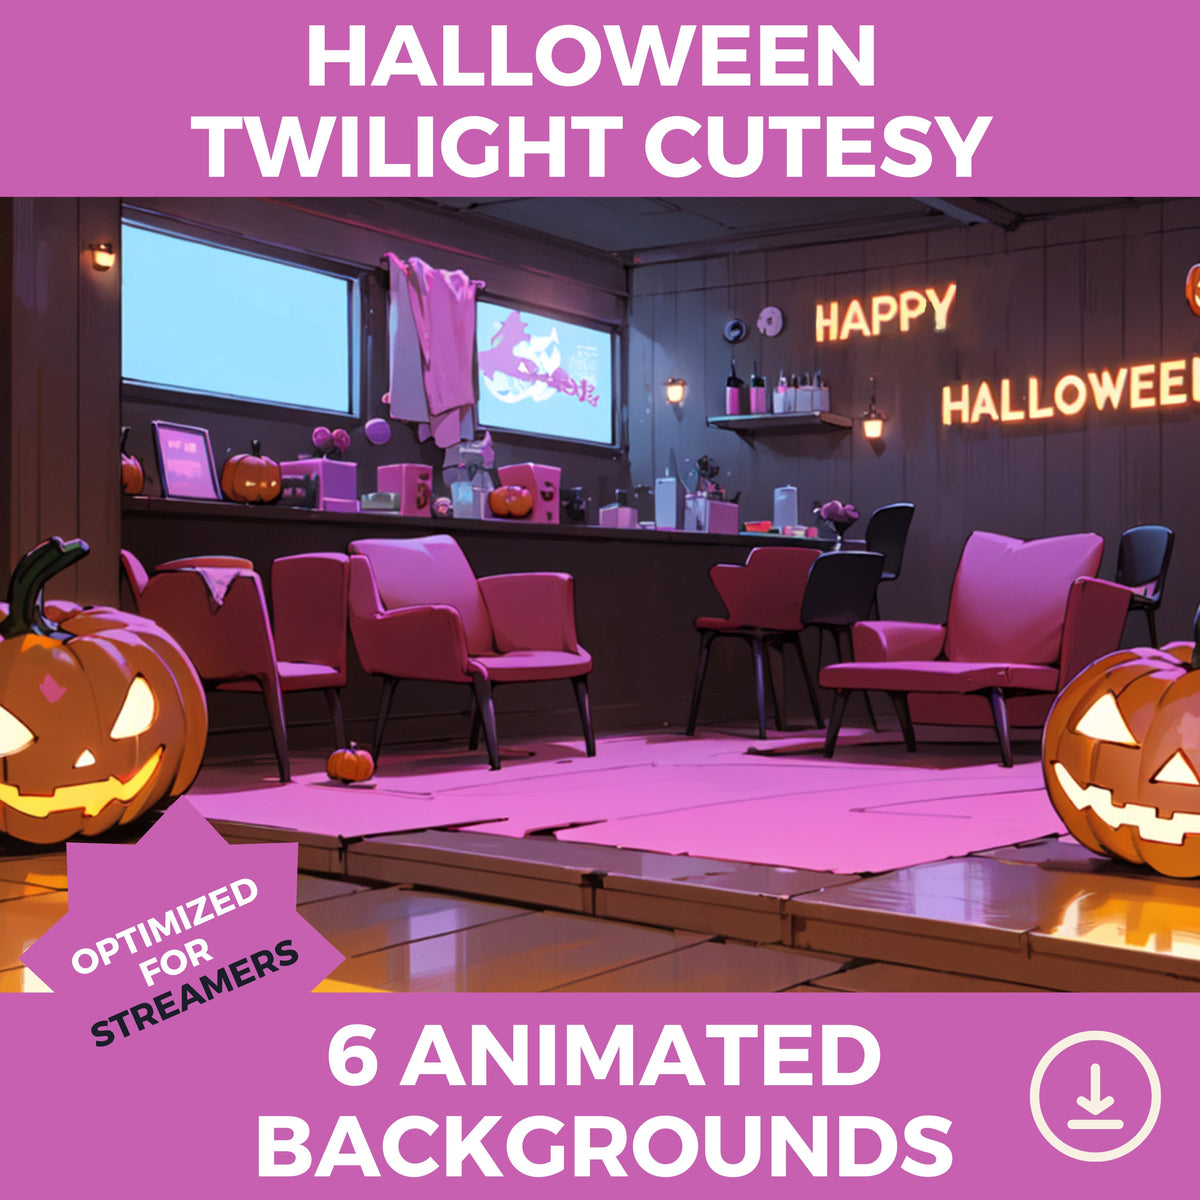 Vtuber niedlicher animierter Hintergrund, Halloween-Set, Dämmerung, niedlich, Ambiente, gemütliche Lofi-Stadt, Stream-Overlay, nahtlos geschlungener Vtuber-Hintergrund